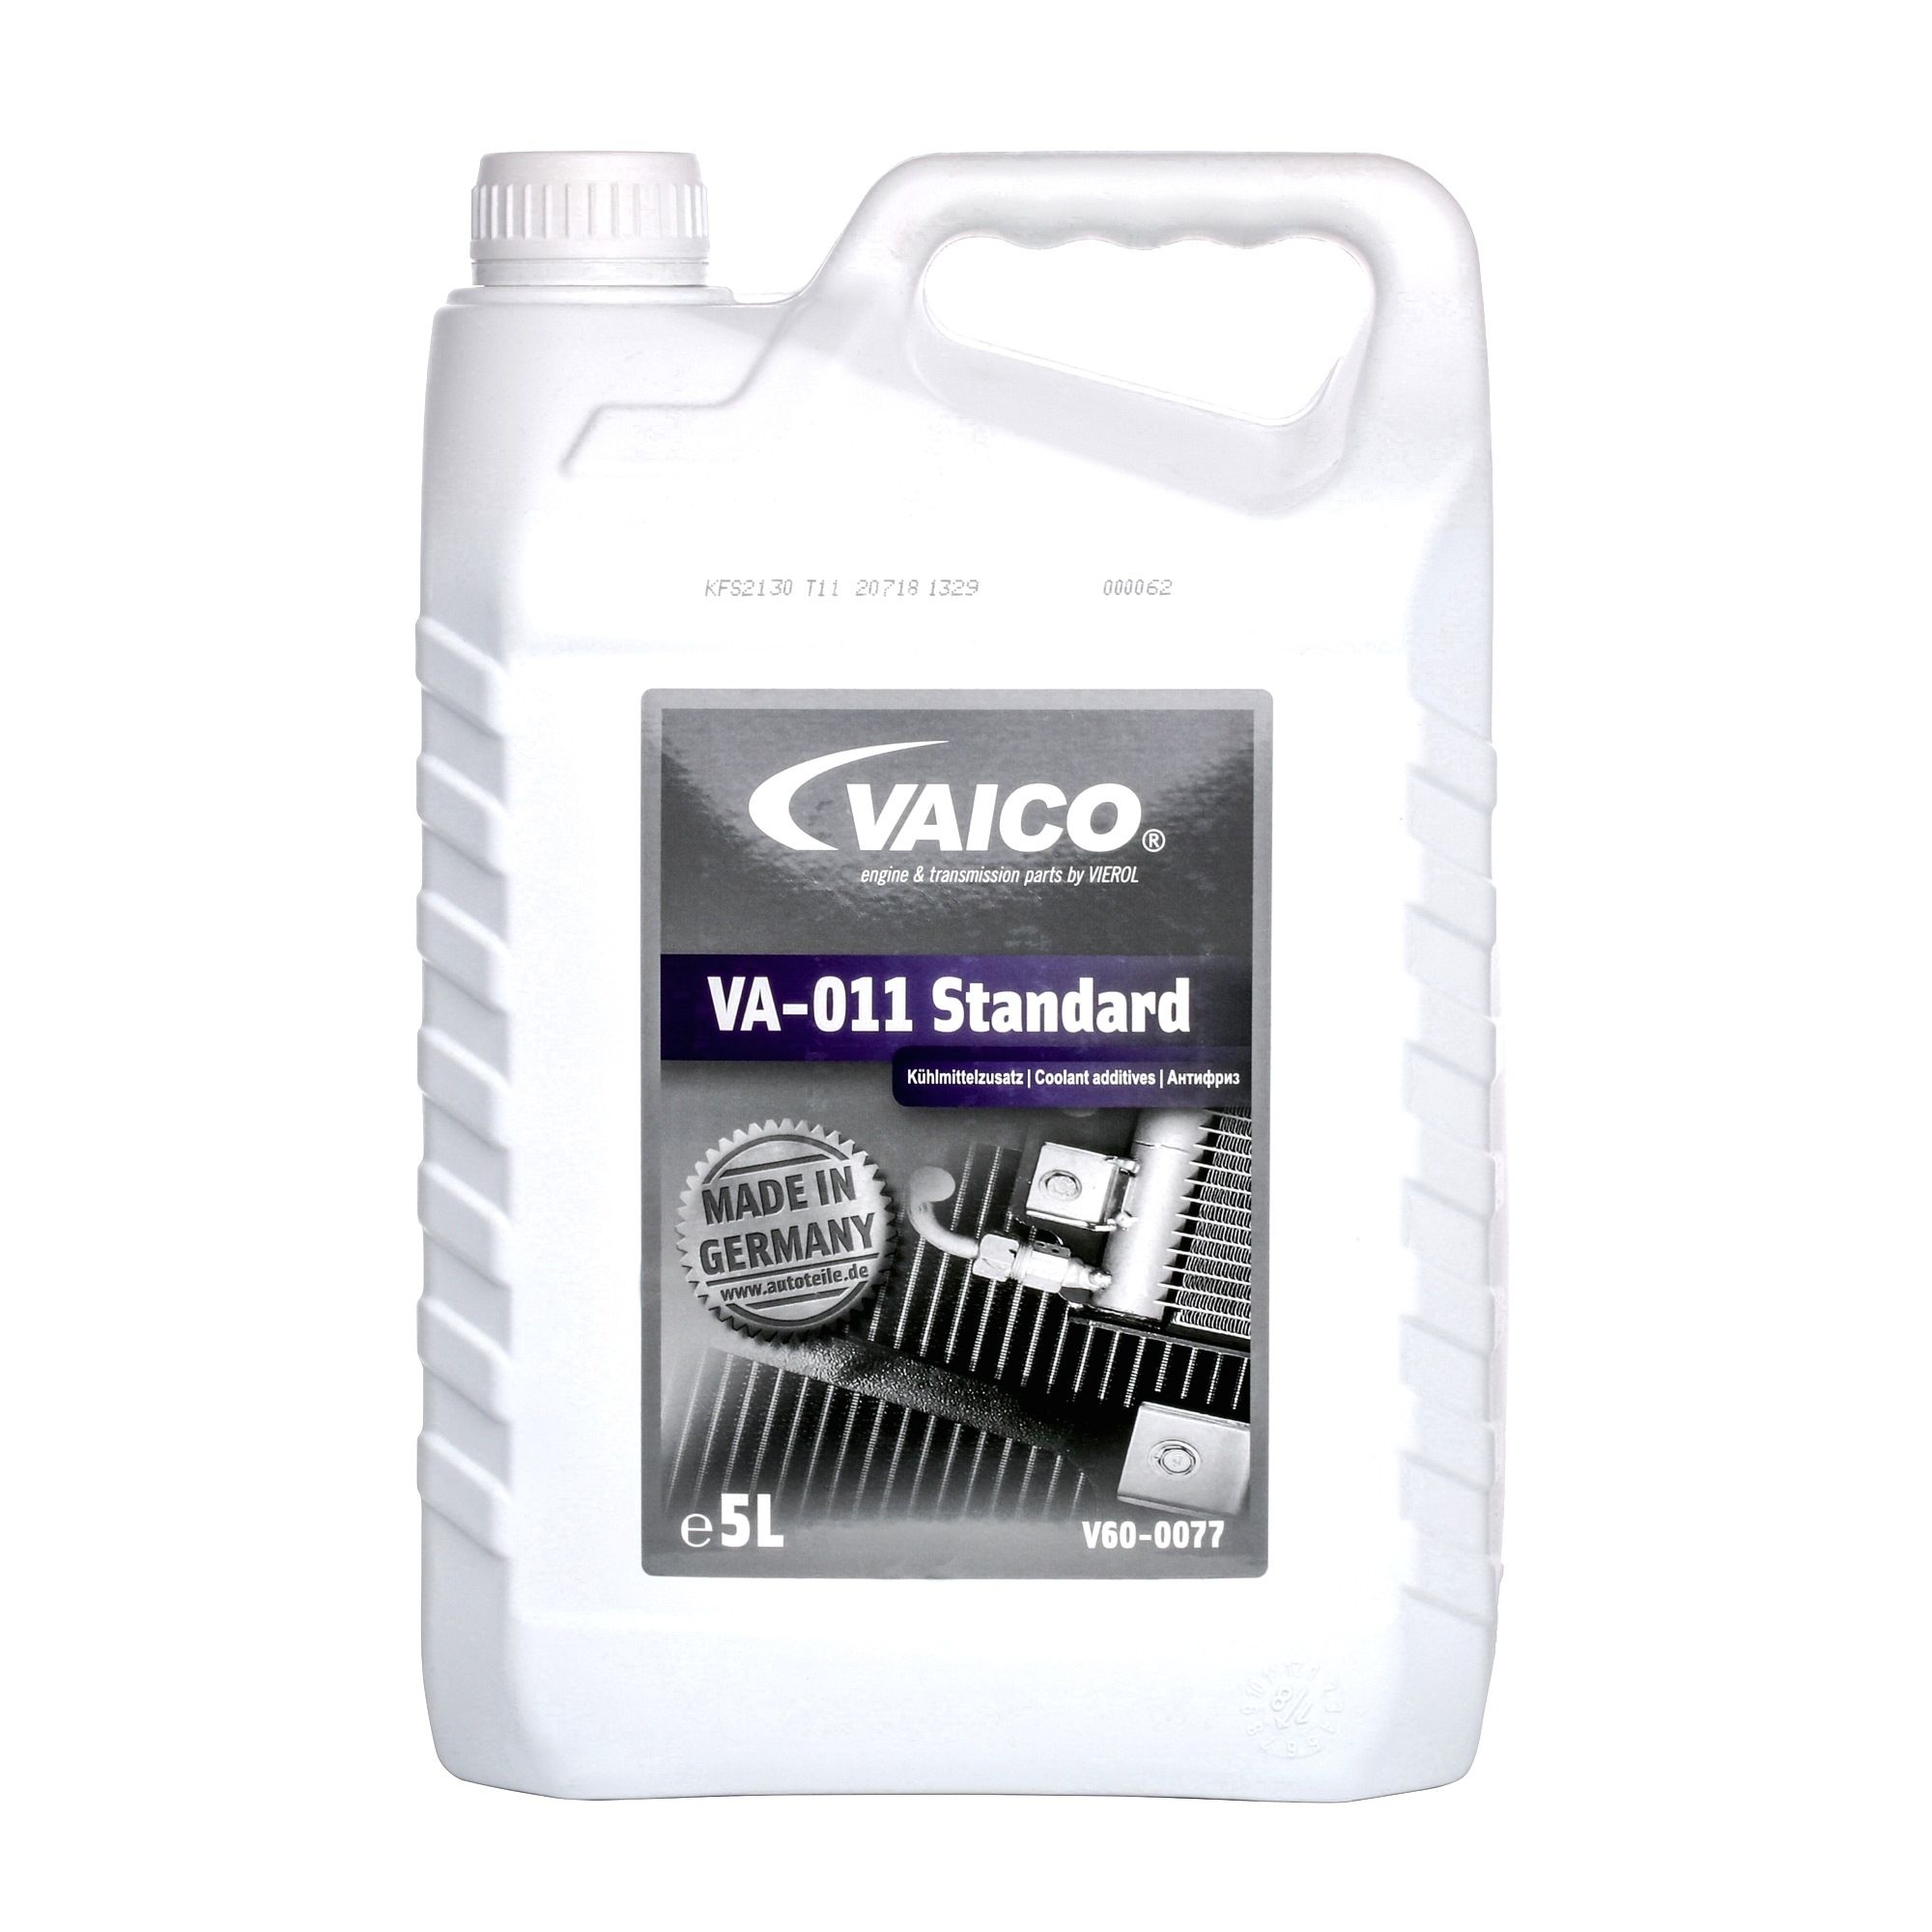 VAICO Ochrona przed zamarzaniem V60-0077